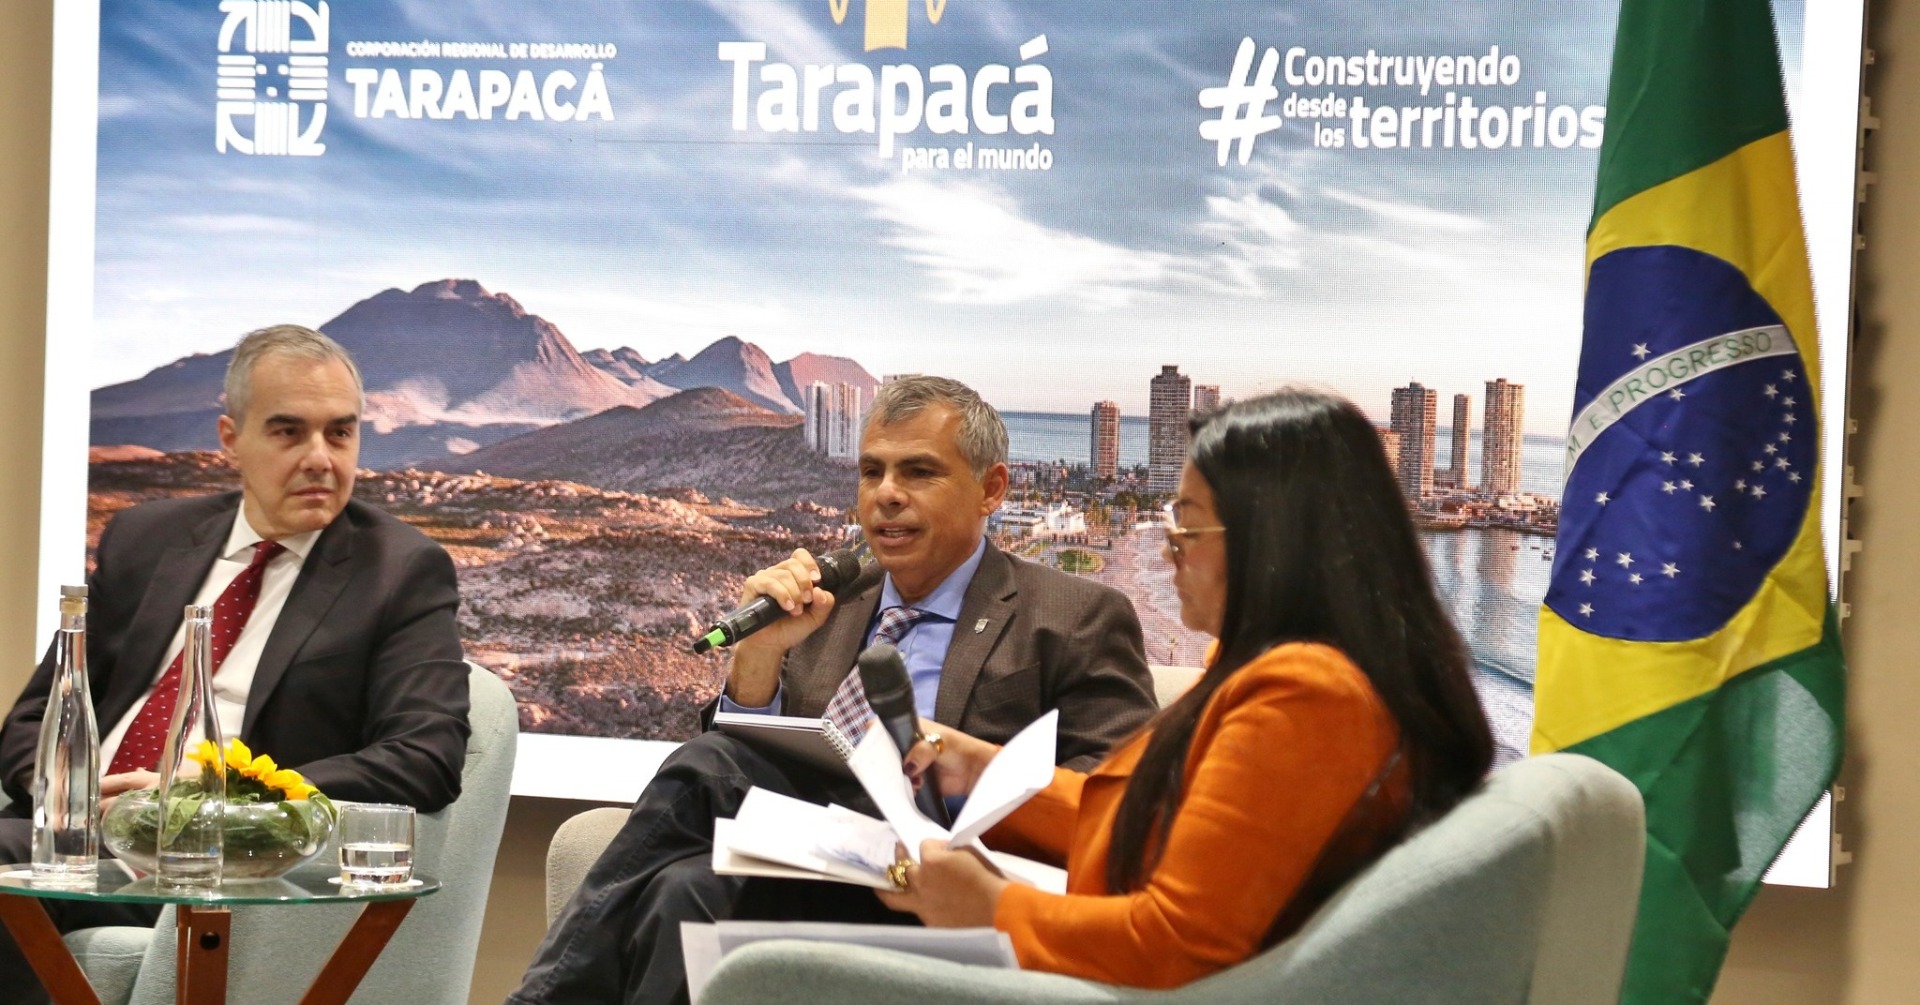 Municipalidad de Iquique presente en seminario "Tarapacá para el mundo"